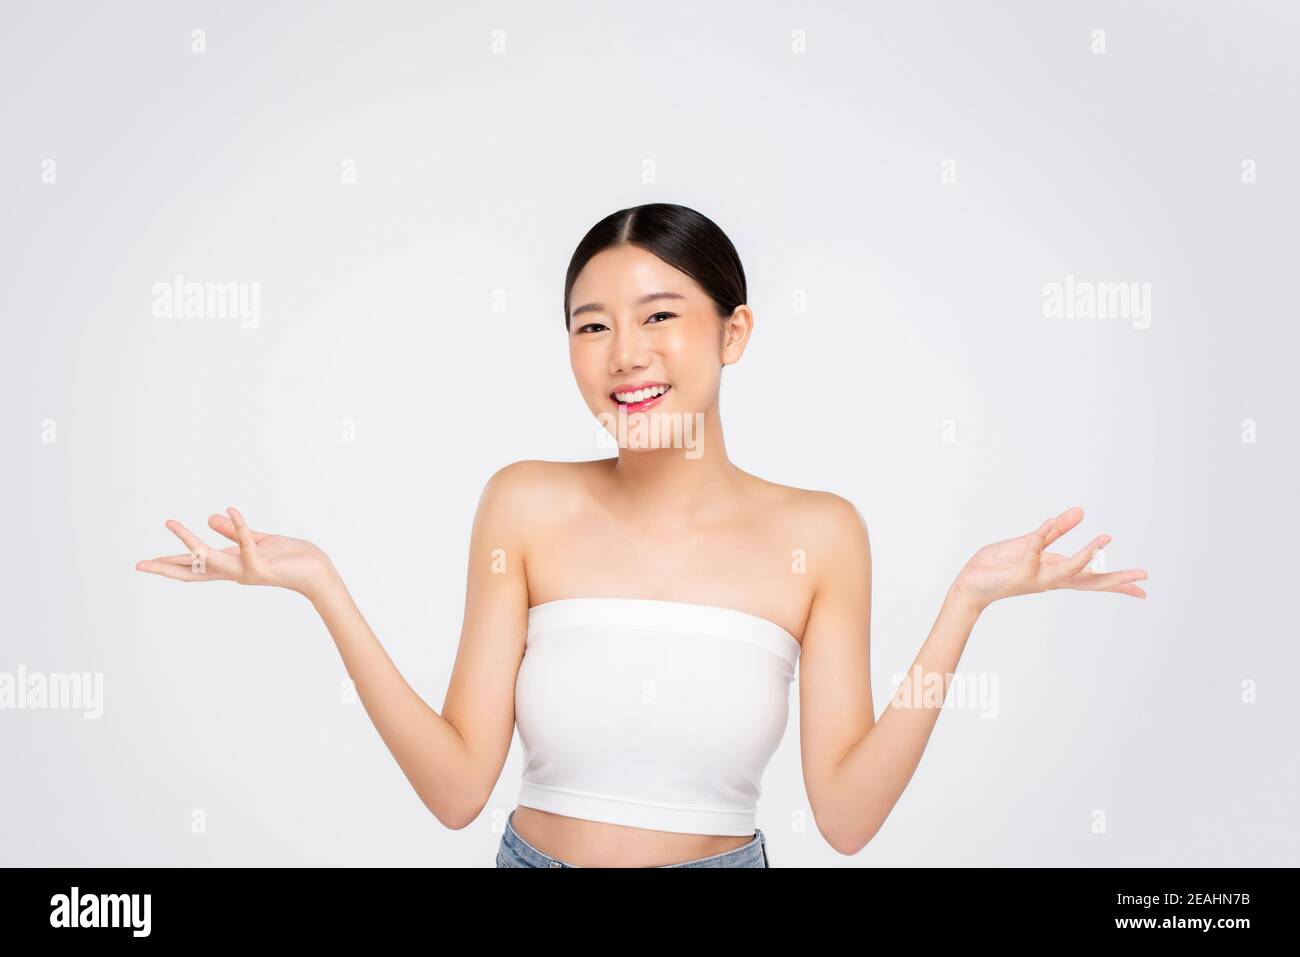 Beauty shot di giovane ragazza asiatica con pelle faccia incandescente sorridendo e aprendo mani vuote su sfondo bianco Foto Stock